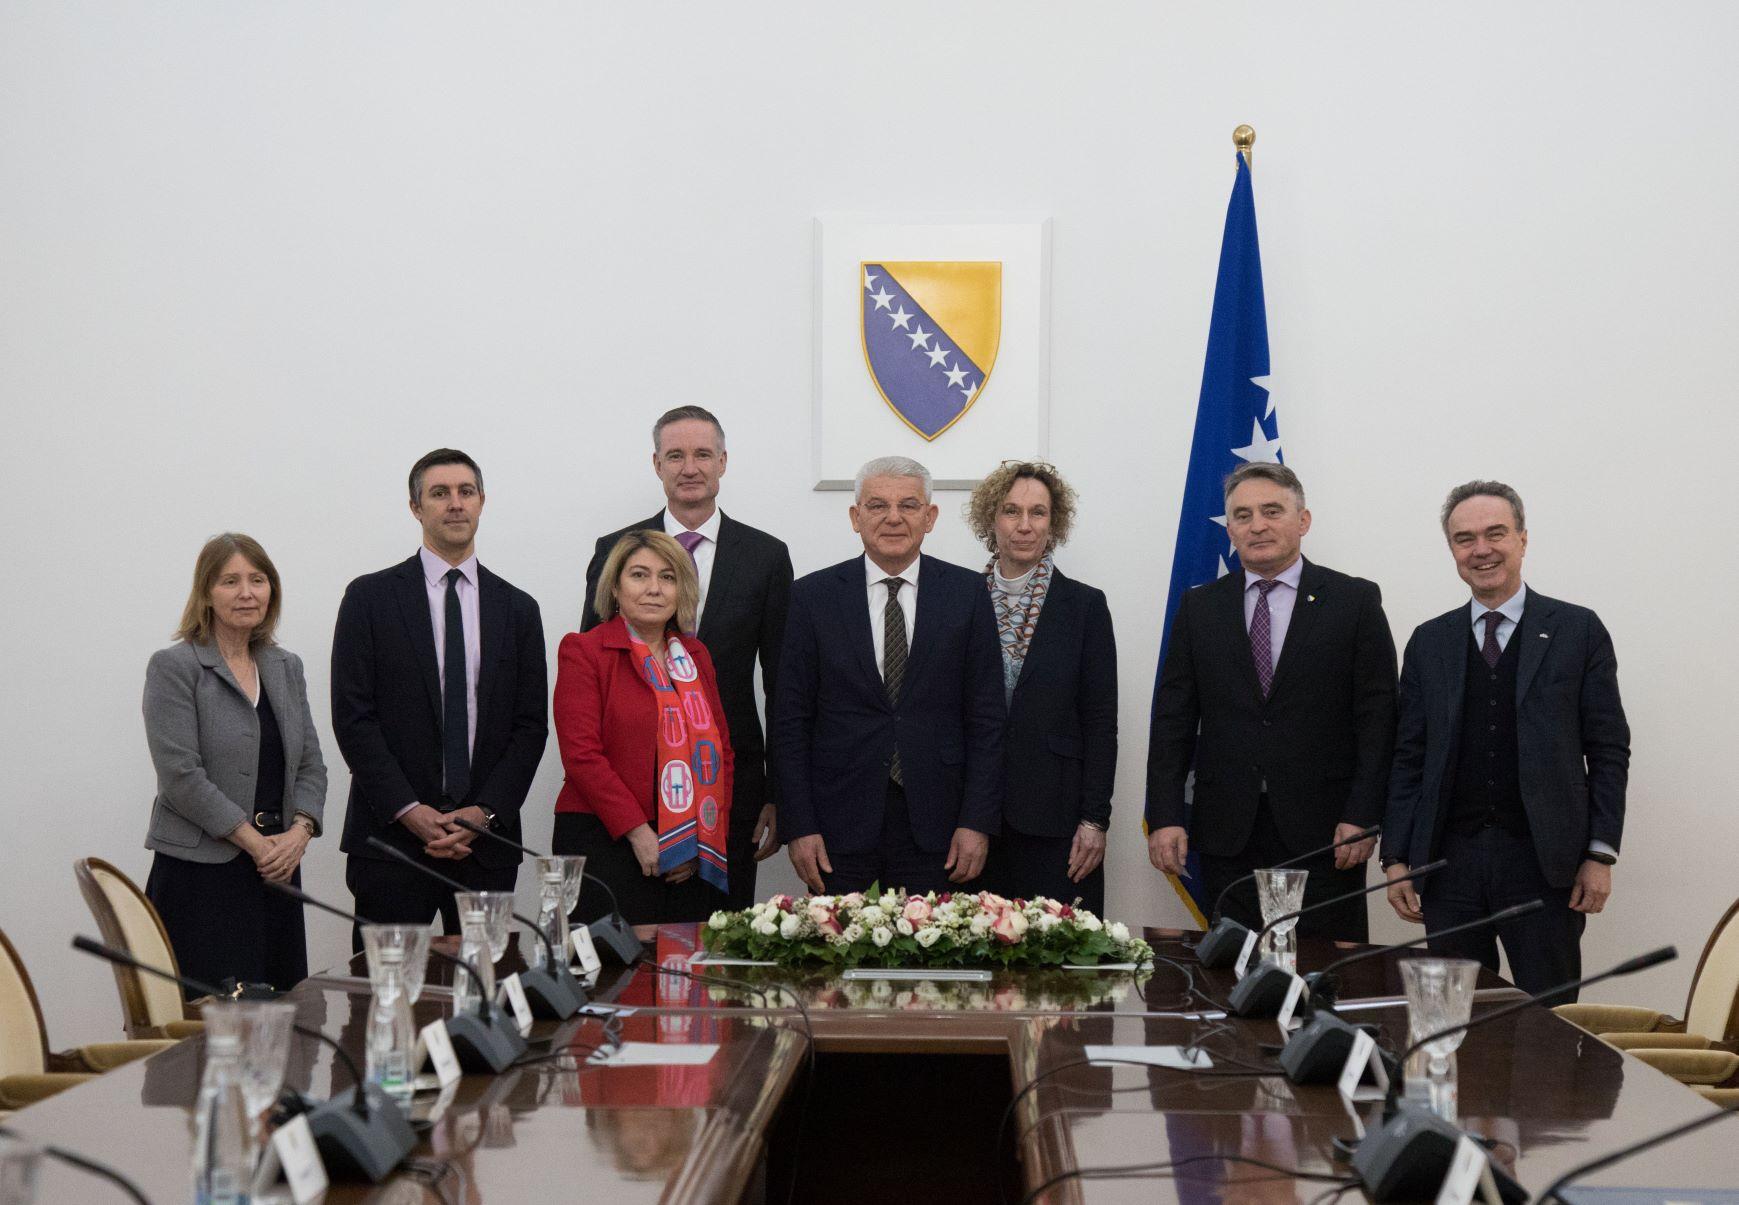 Šefik Džaferović i Željko Komšić primili šefove stalnih misija Francuske, Njemačke, Italije, Velike Britanije i SAD-a u OSCE-u